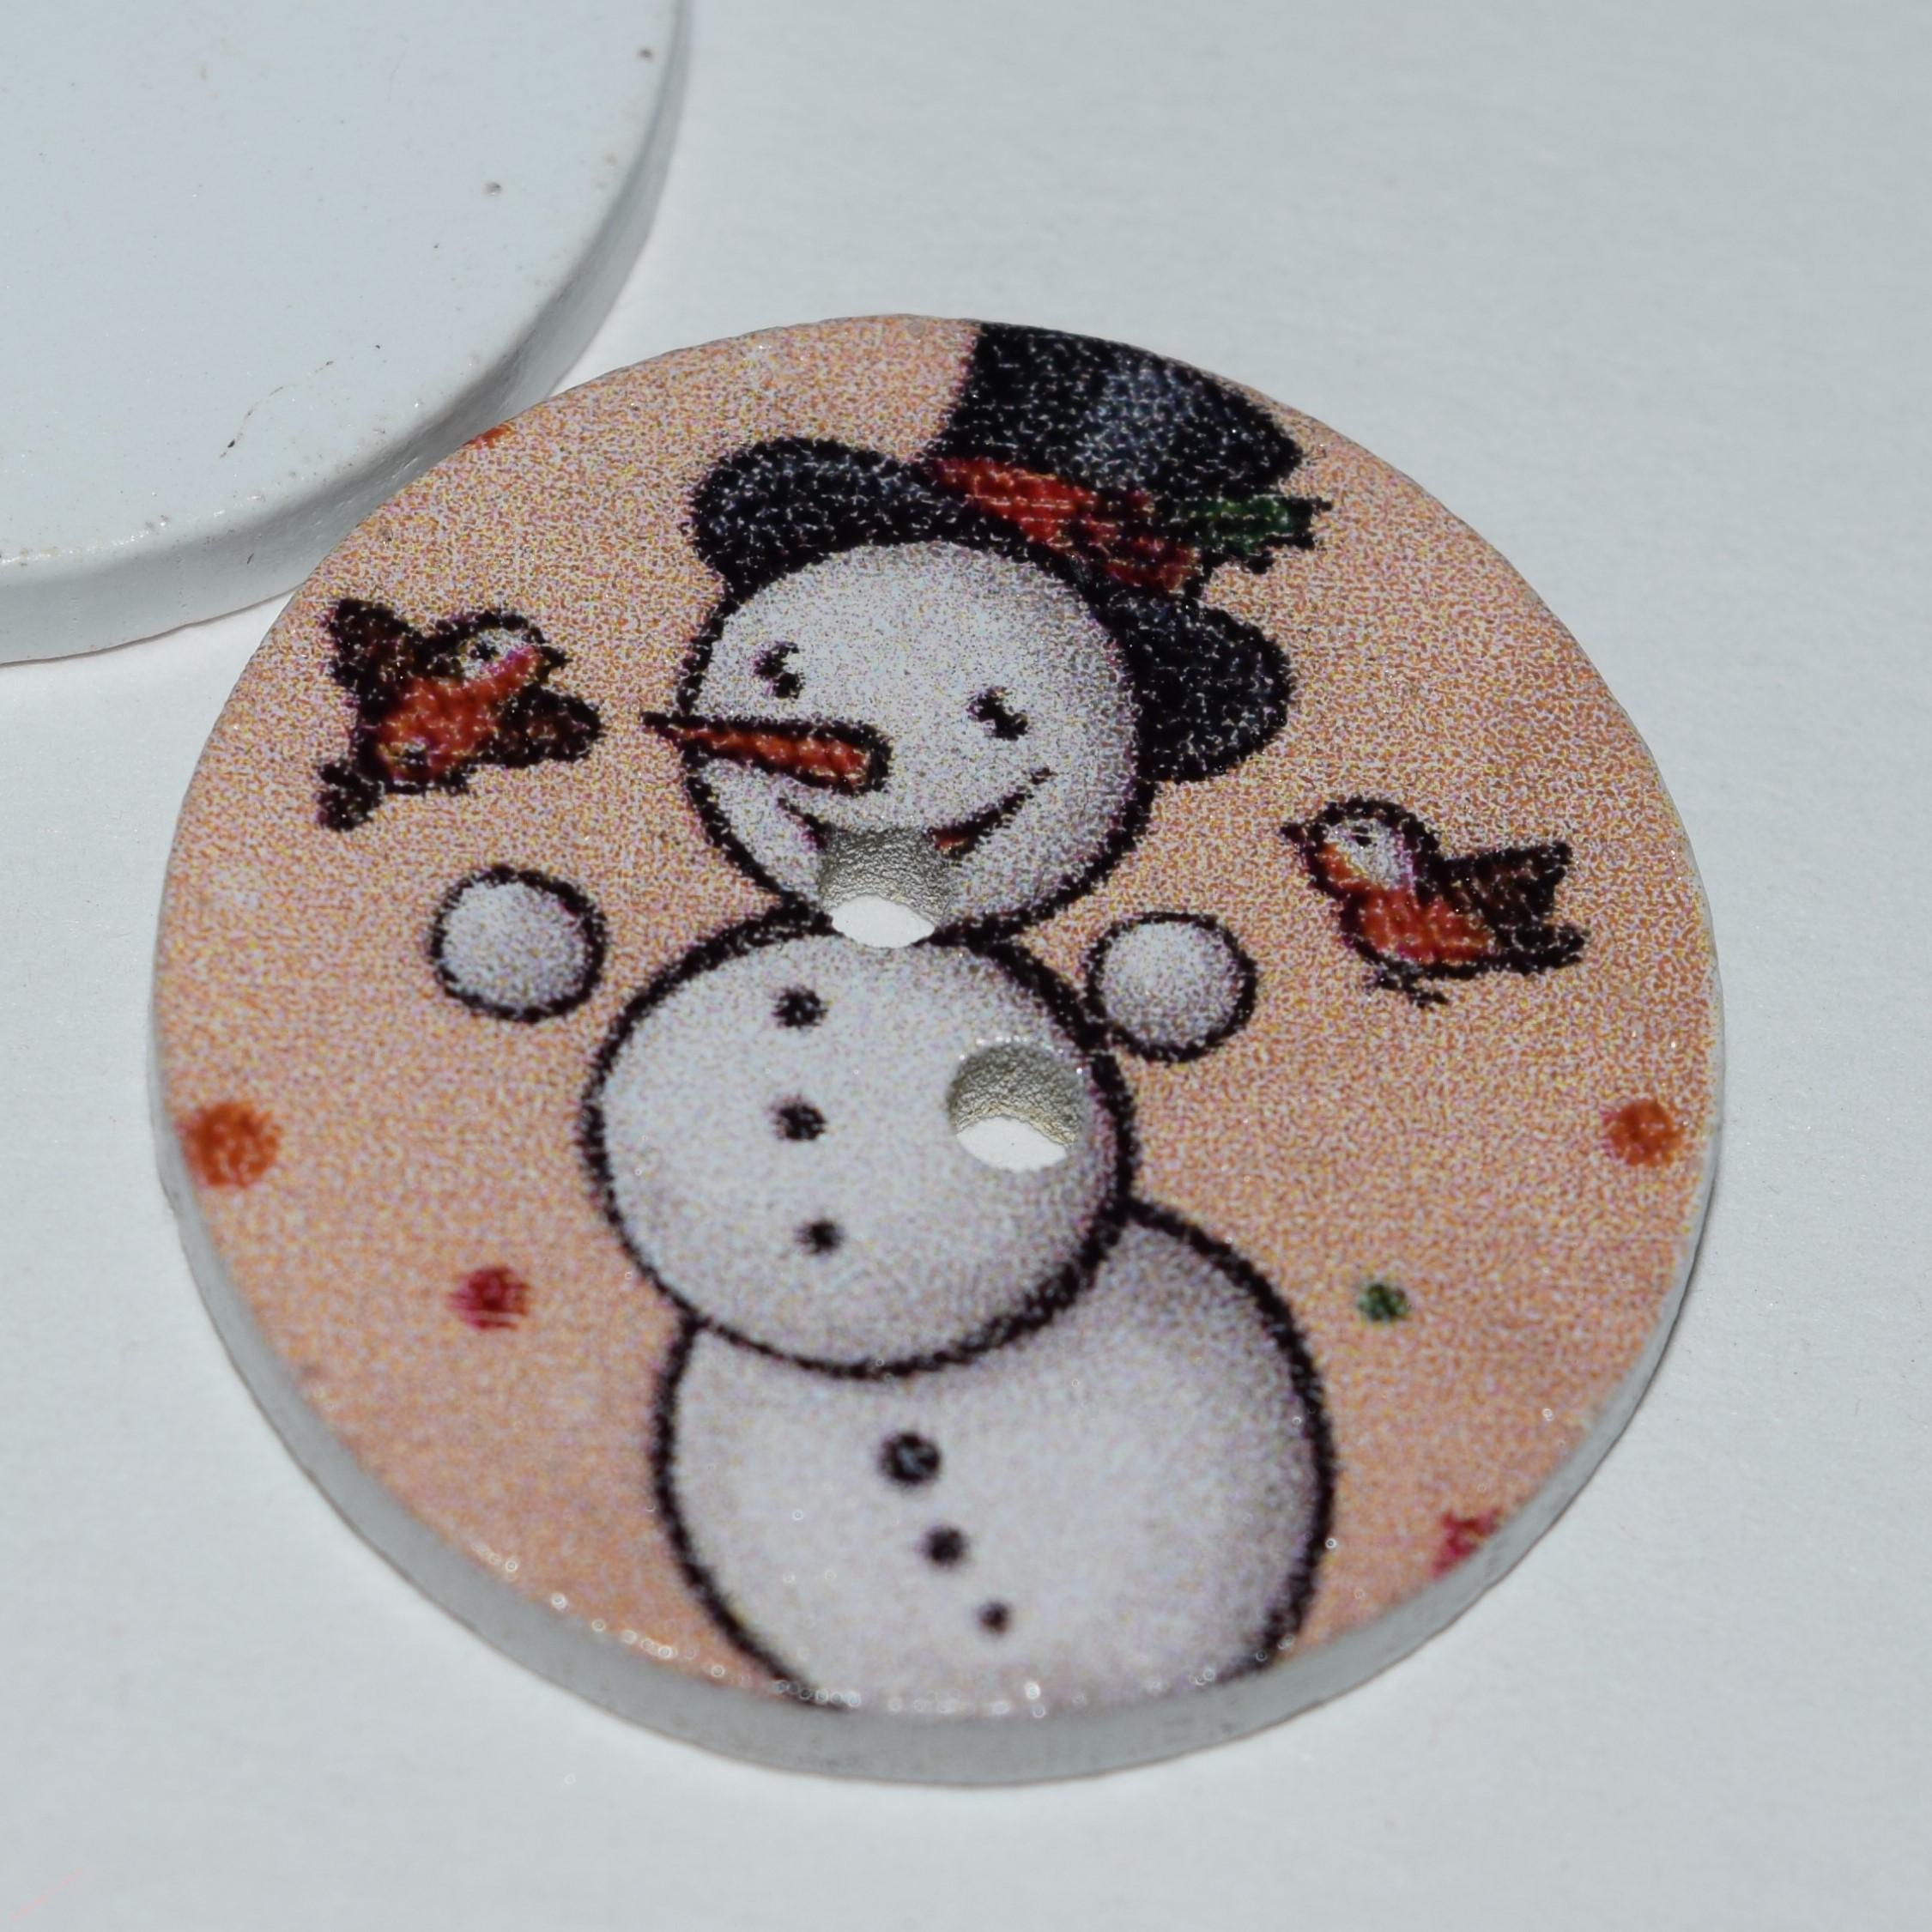 Knoflíček dřevěný vánoční sněhulák sněhuláček 25 mm